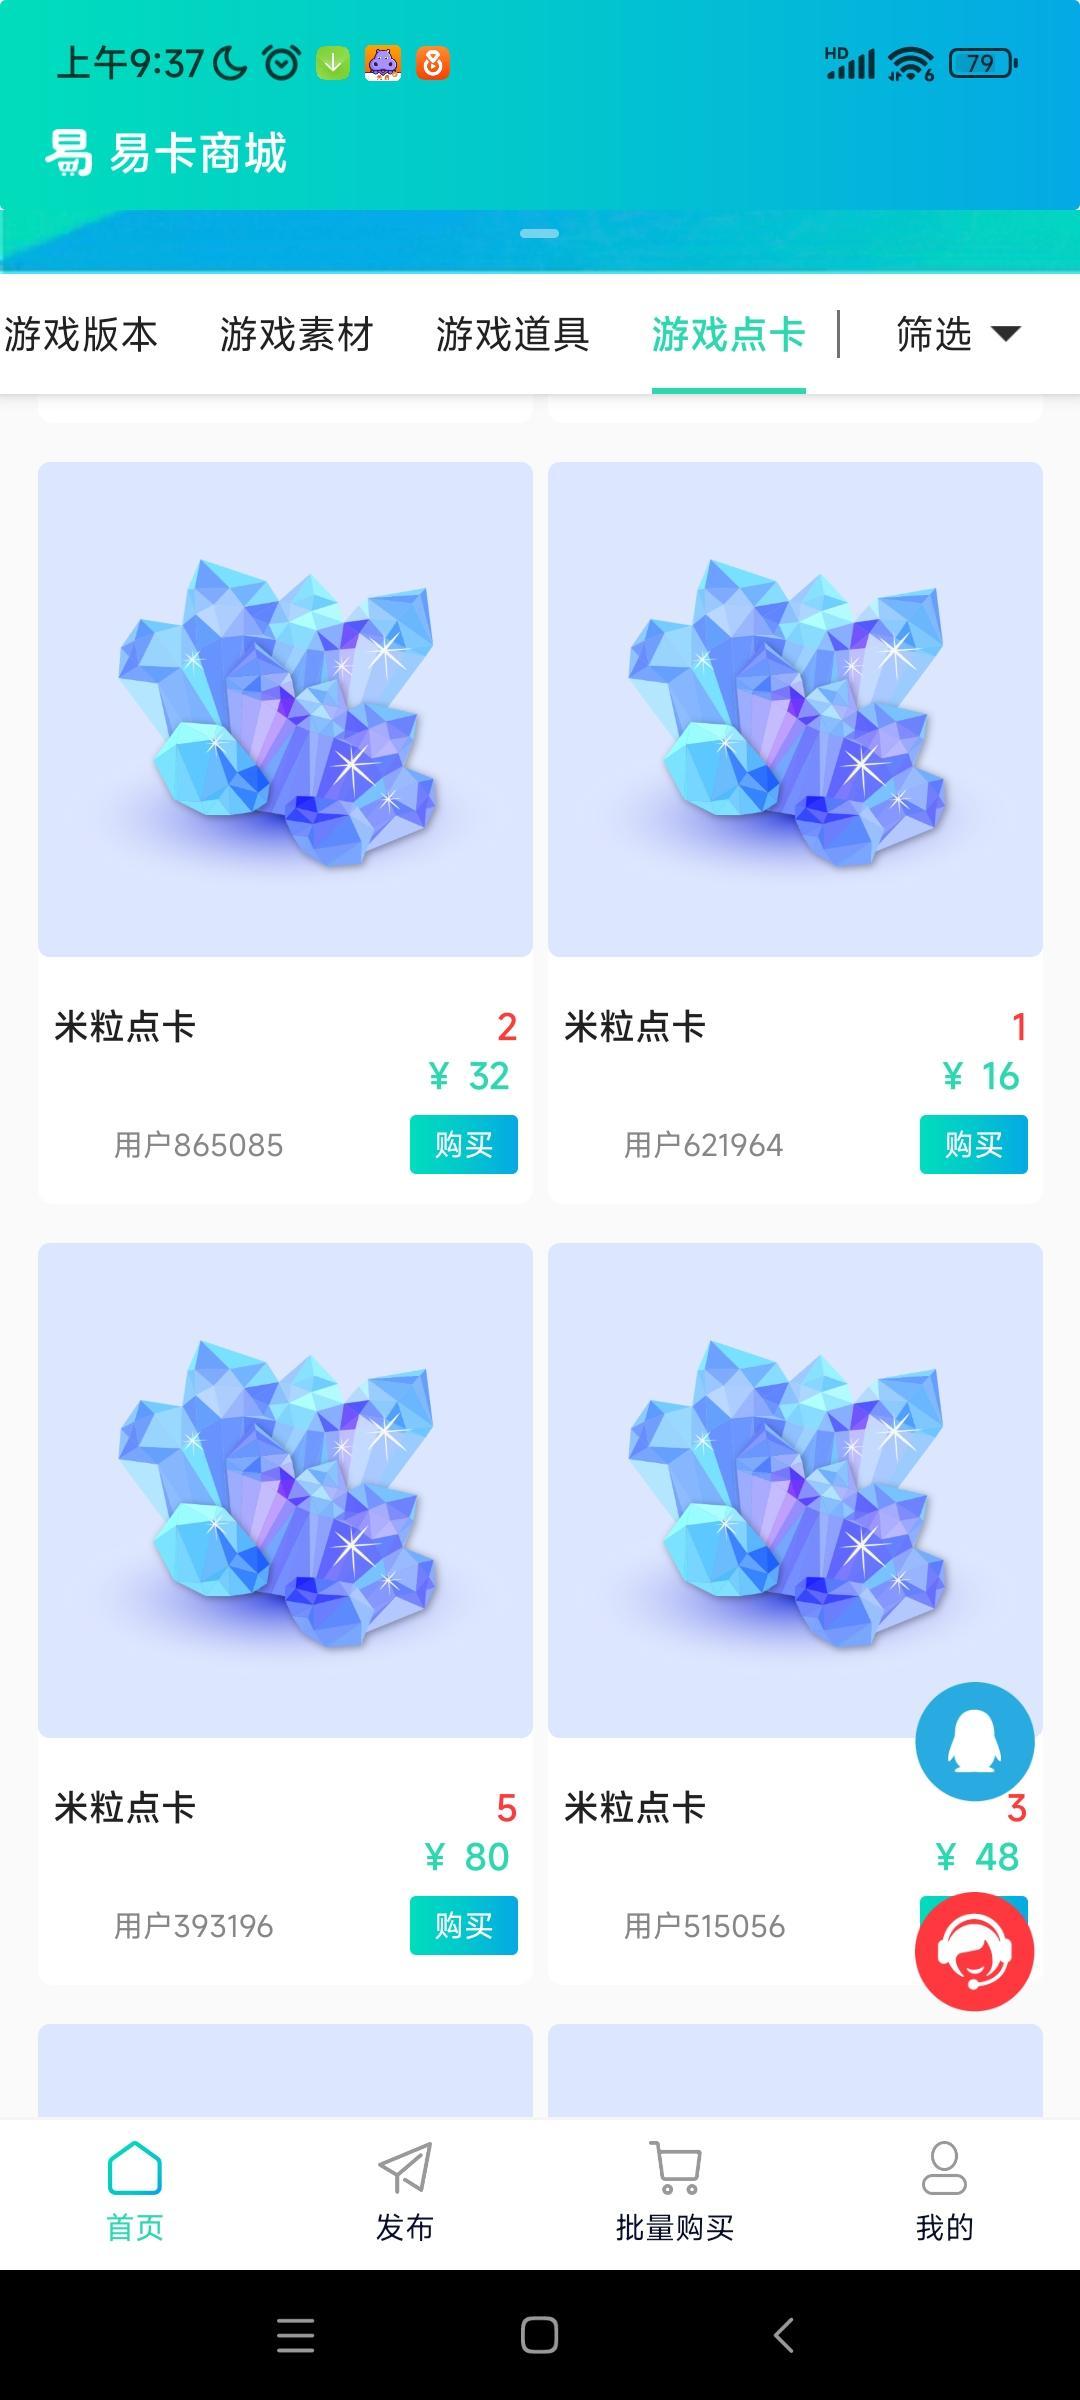 米虫交易所 米虫新易游app交易平台